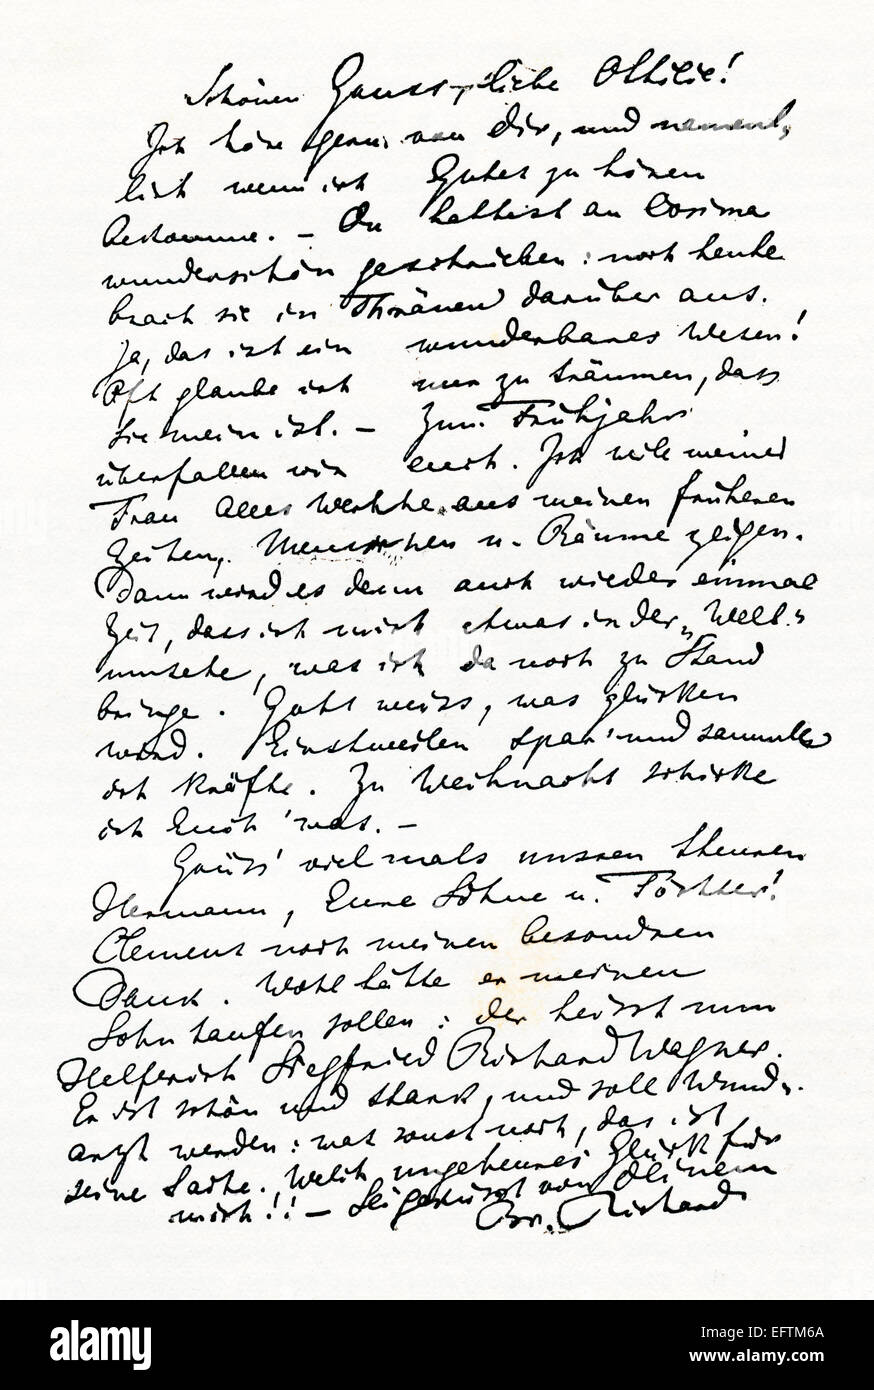 Campione di grafia da una lettera scritta da Richard Wagner. Wilhelm Richard Wagner, 1813 - 1883. Compositore tedesco. Foto Stock